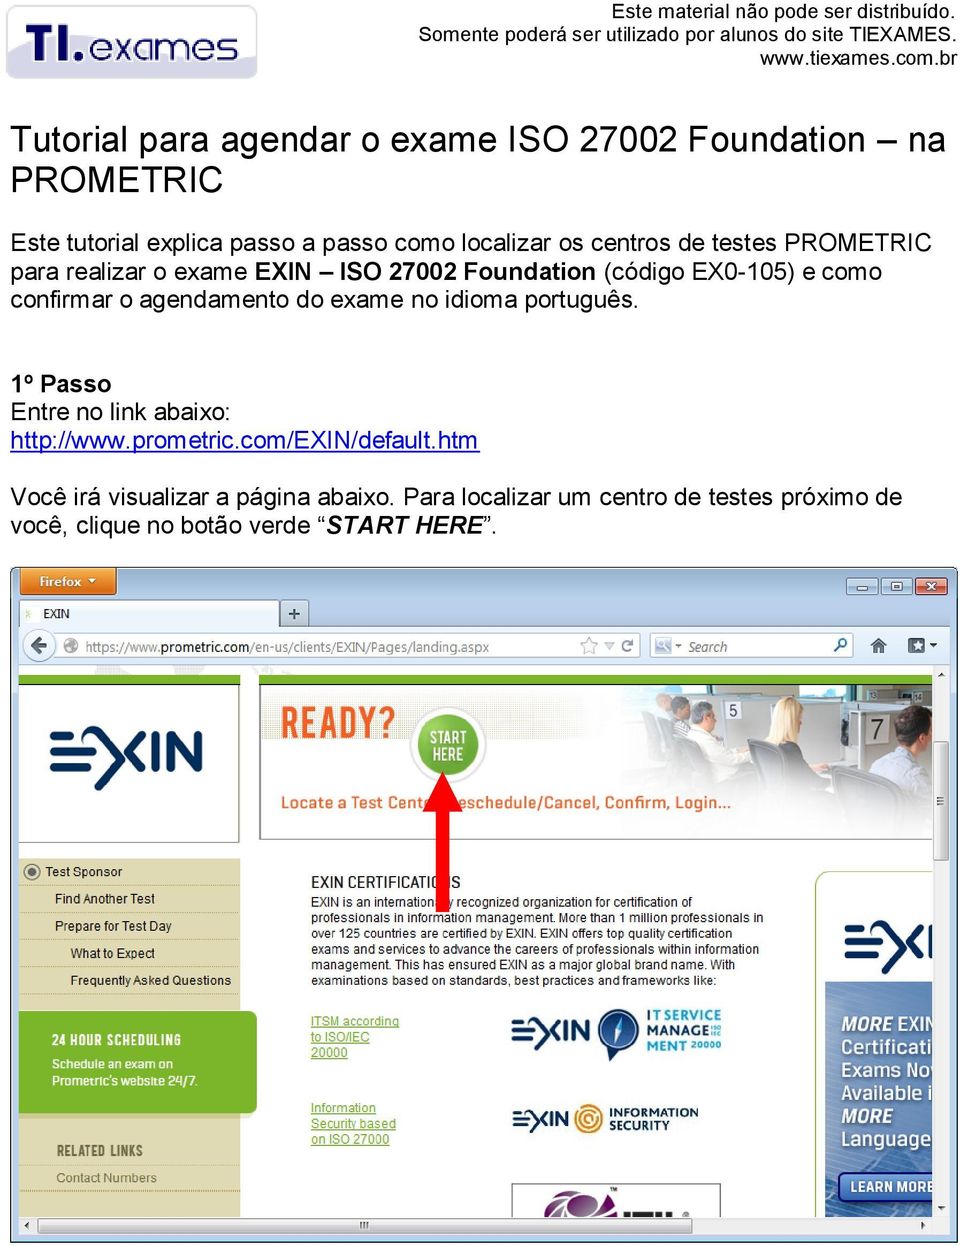 agendamento do exame no idioma português. 1º Passo Entre no link abaixo: http://www.prometric.com/exin/default.